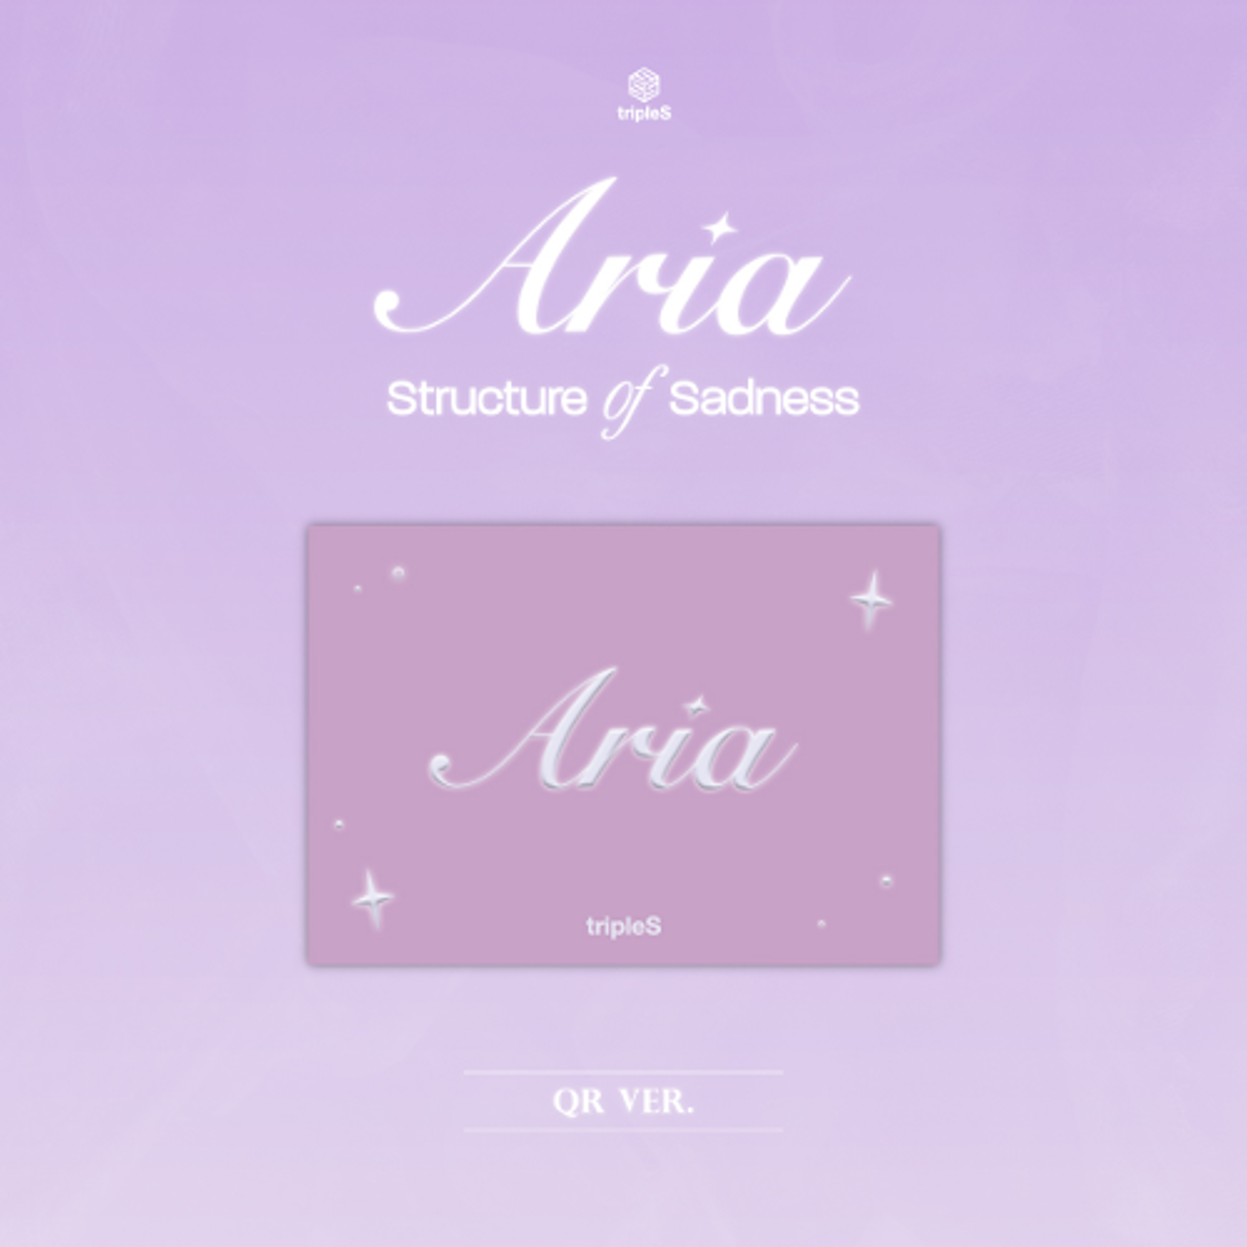 トリプルエス (tripleS) - シングルアルバム [Aria] ] (QR ver.)